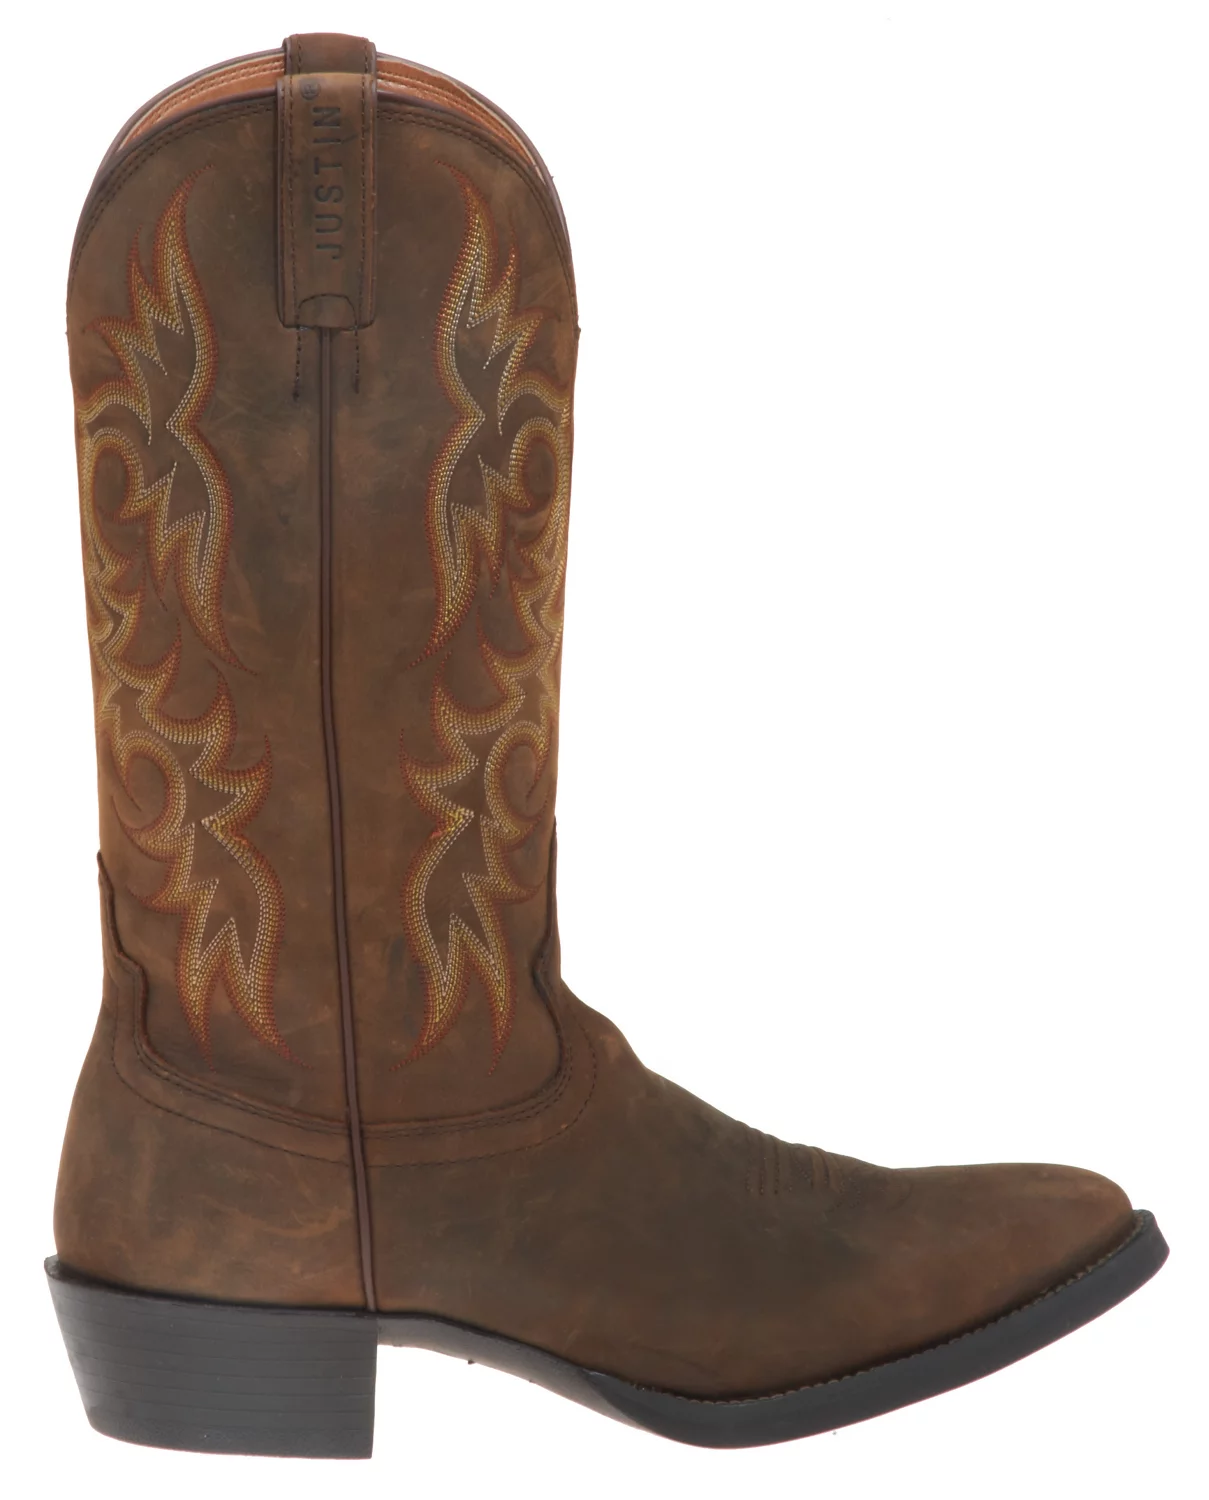 Men's Western Boots | Men's Cowboy Boots, Cowboy Boots For Men ...